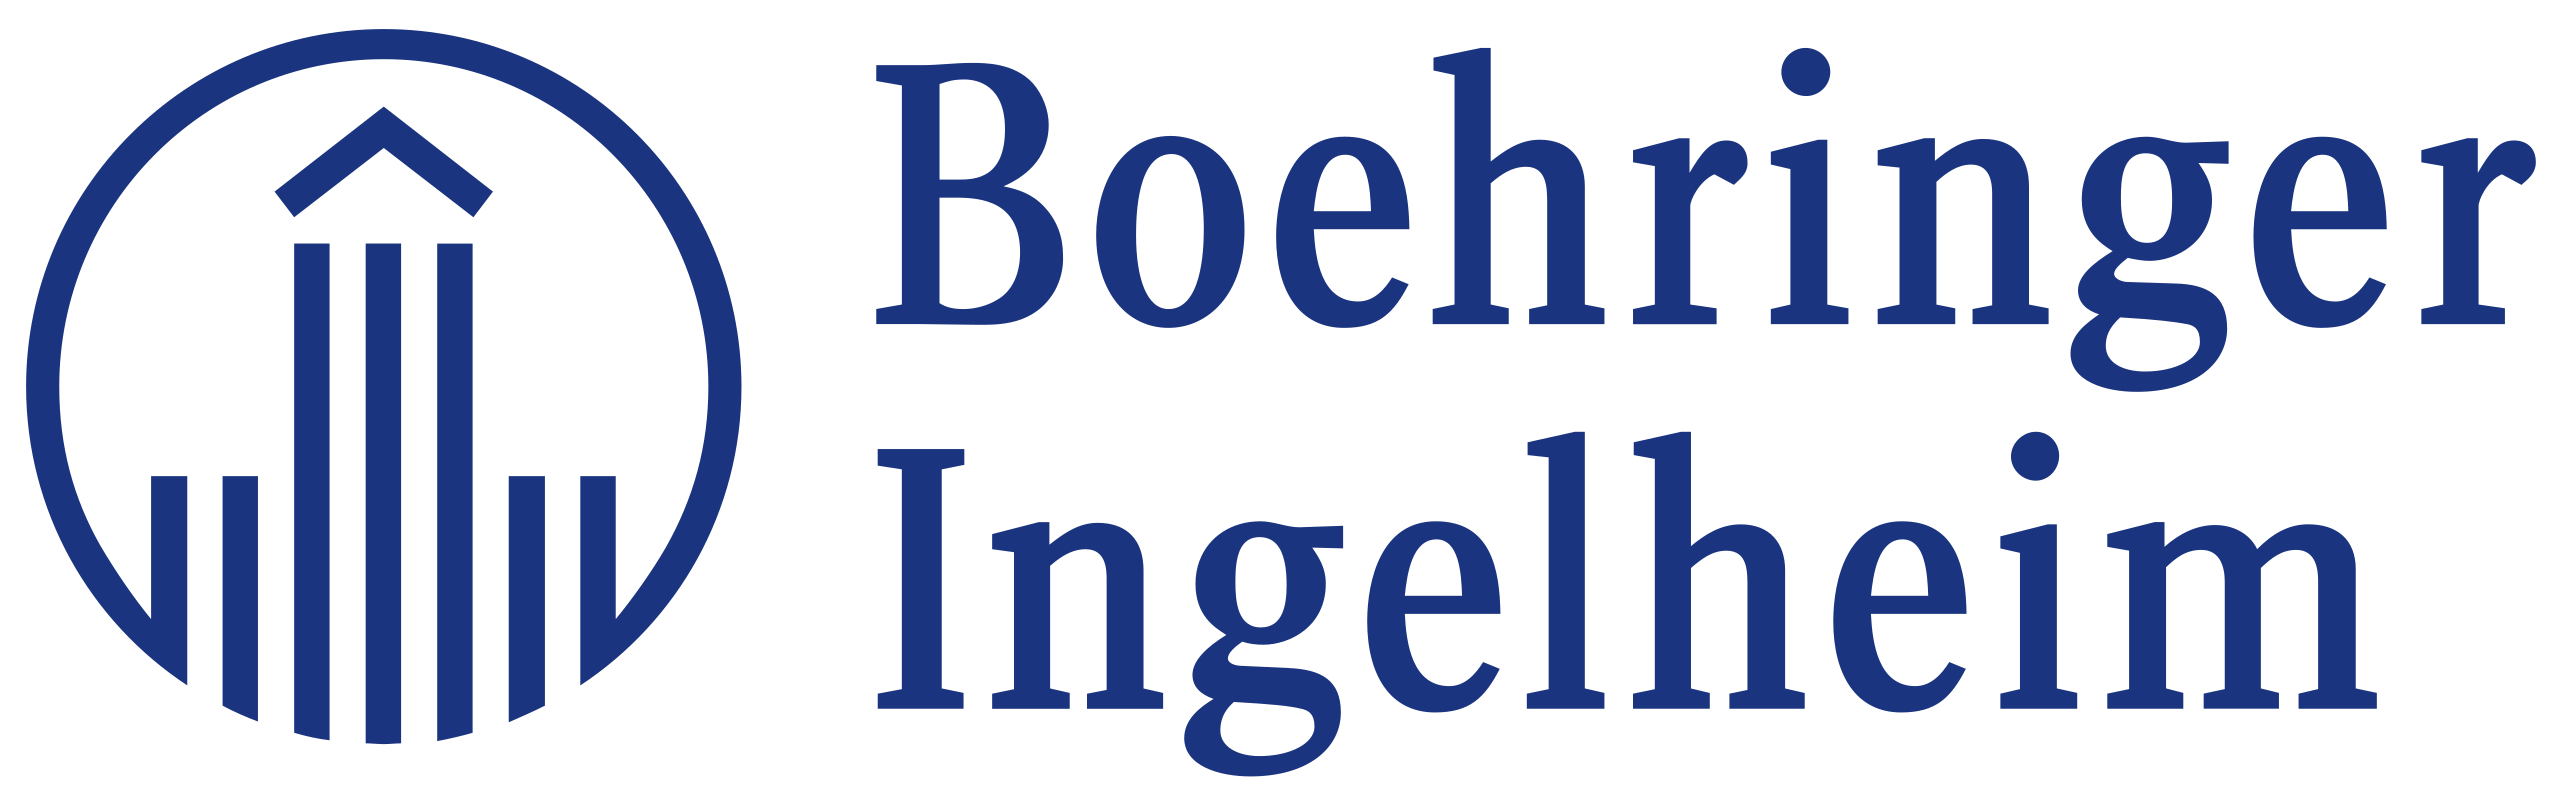 Sicherheitsconsulting Präventionskonzepte - Boehringer Ingelheim